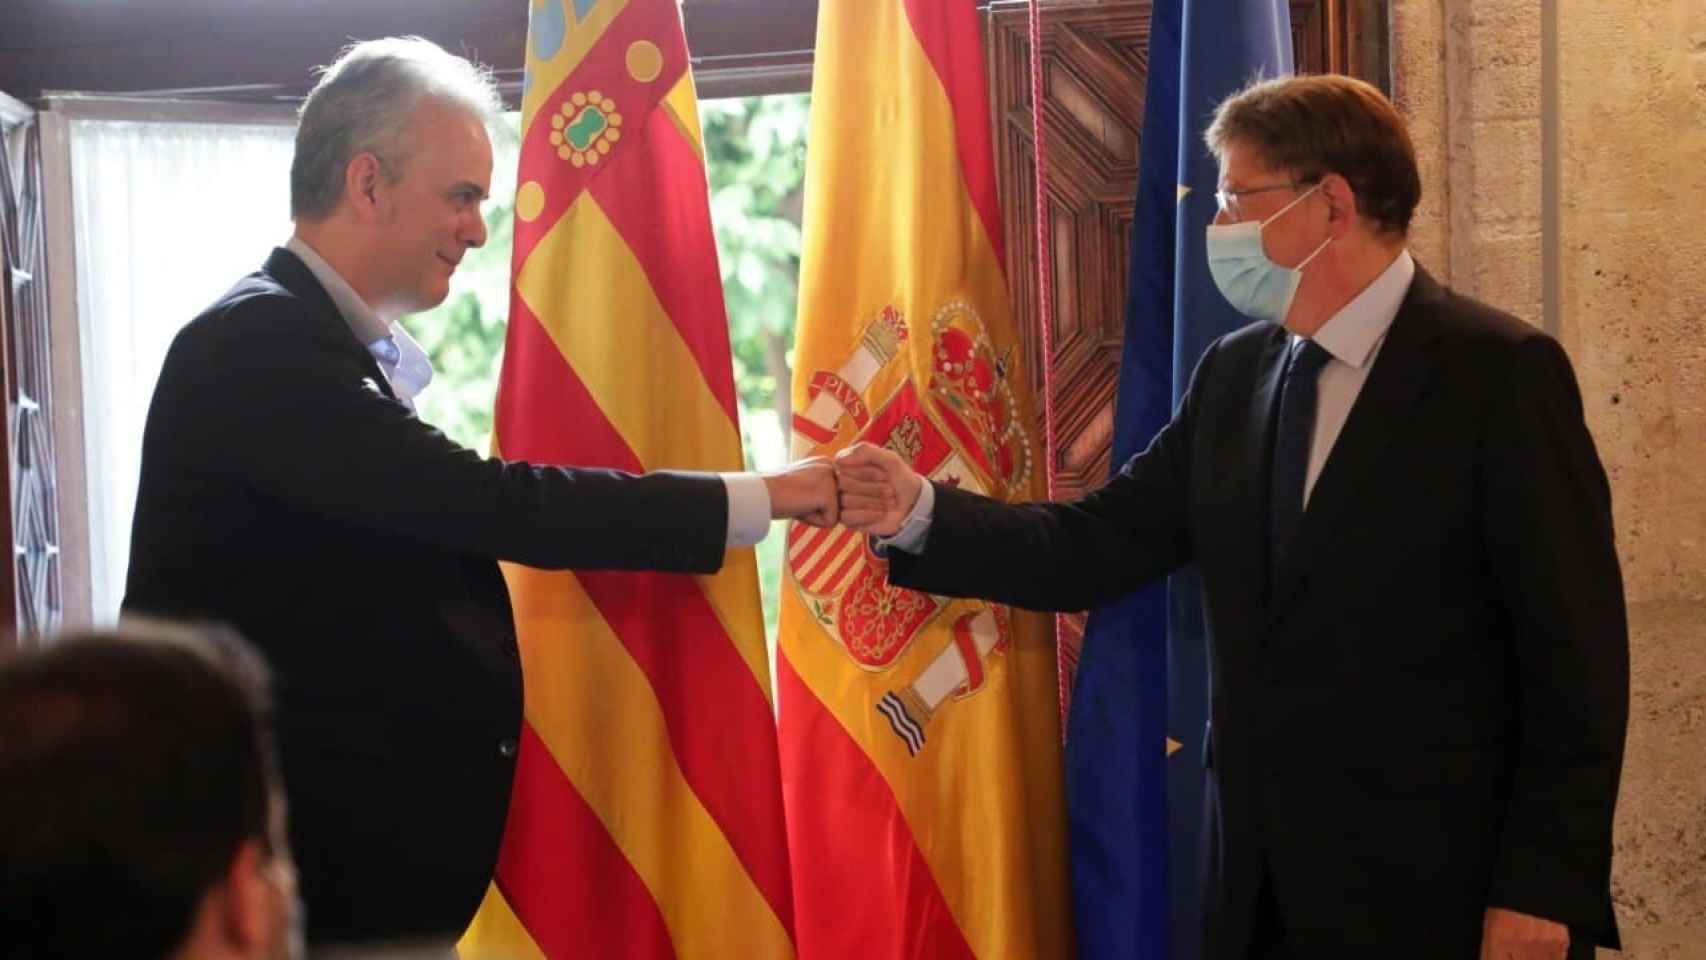 Héctor Illueca saluda a Ximo Puig en su toma de posesión como vicepresidente de la Generalitat Valenciana. EE